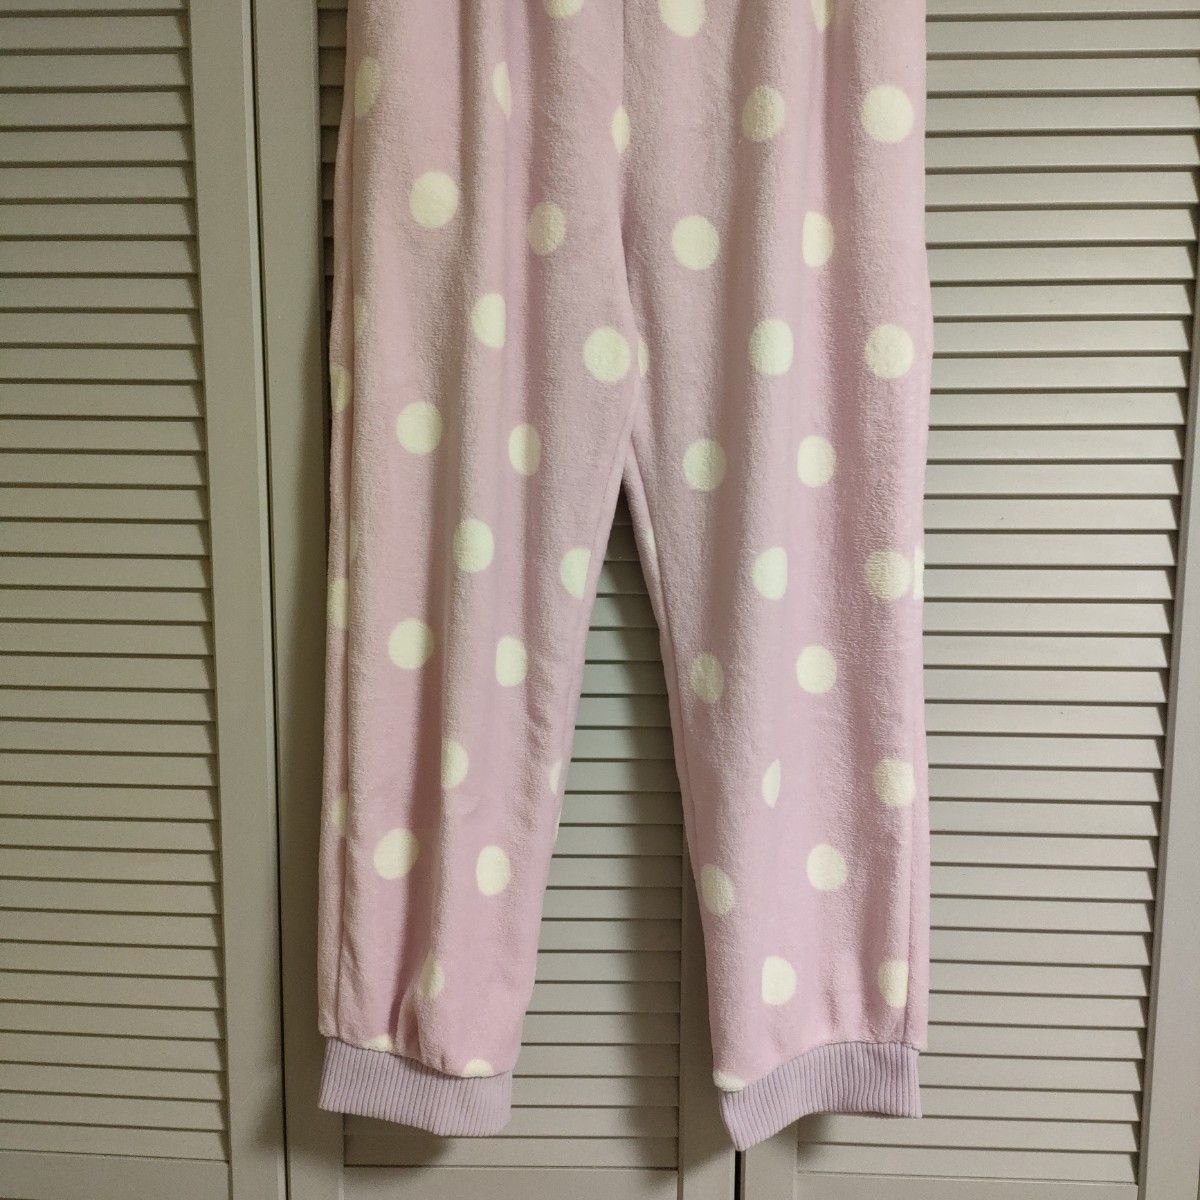 フリース ボア ズボン パンツ ルームウェア ピンク パープル レディース 大きいサイズ LLサイズ ~ 3Lサイズ